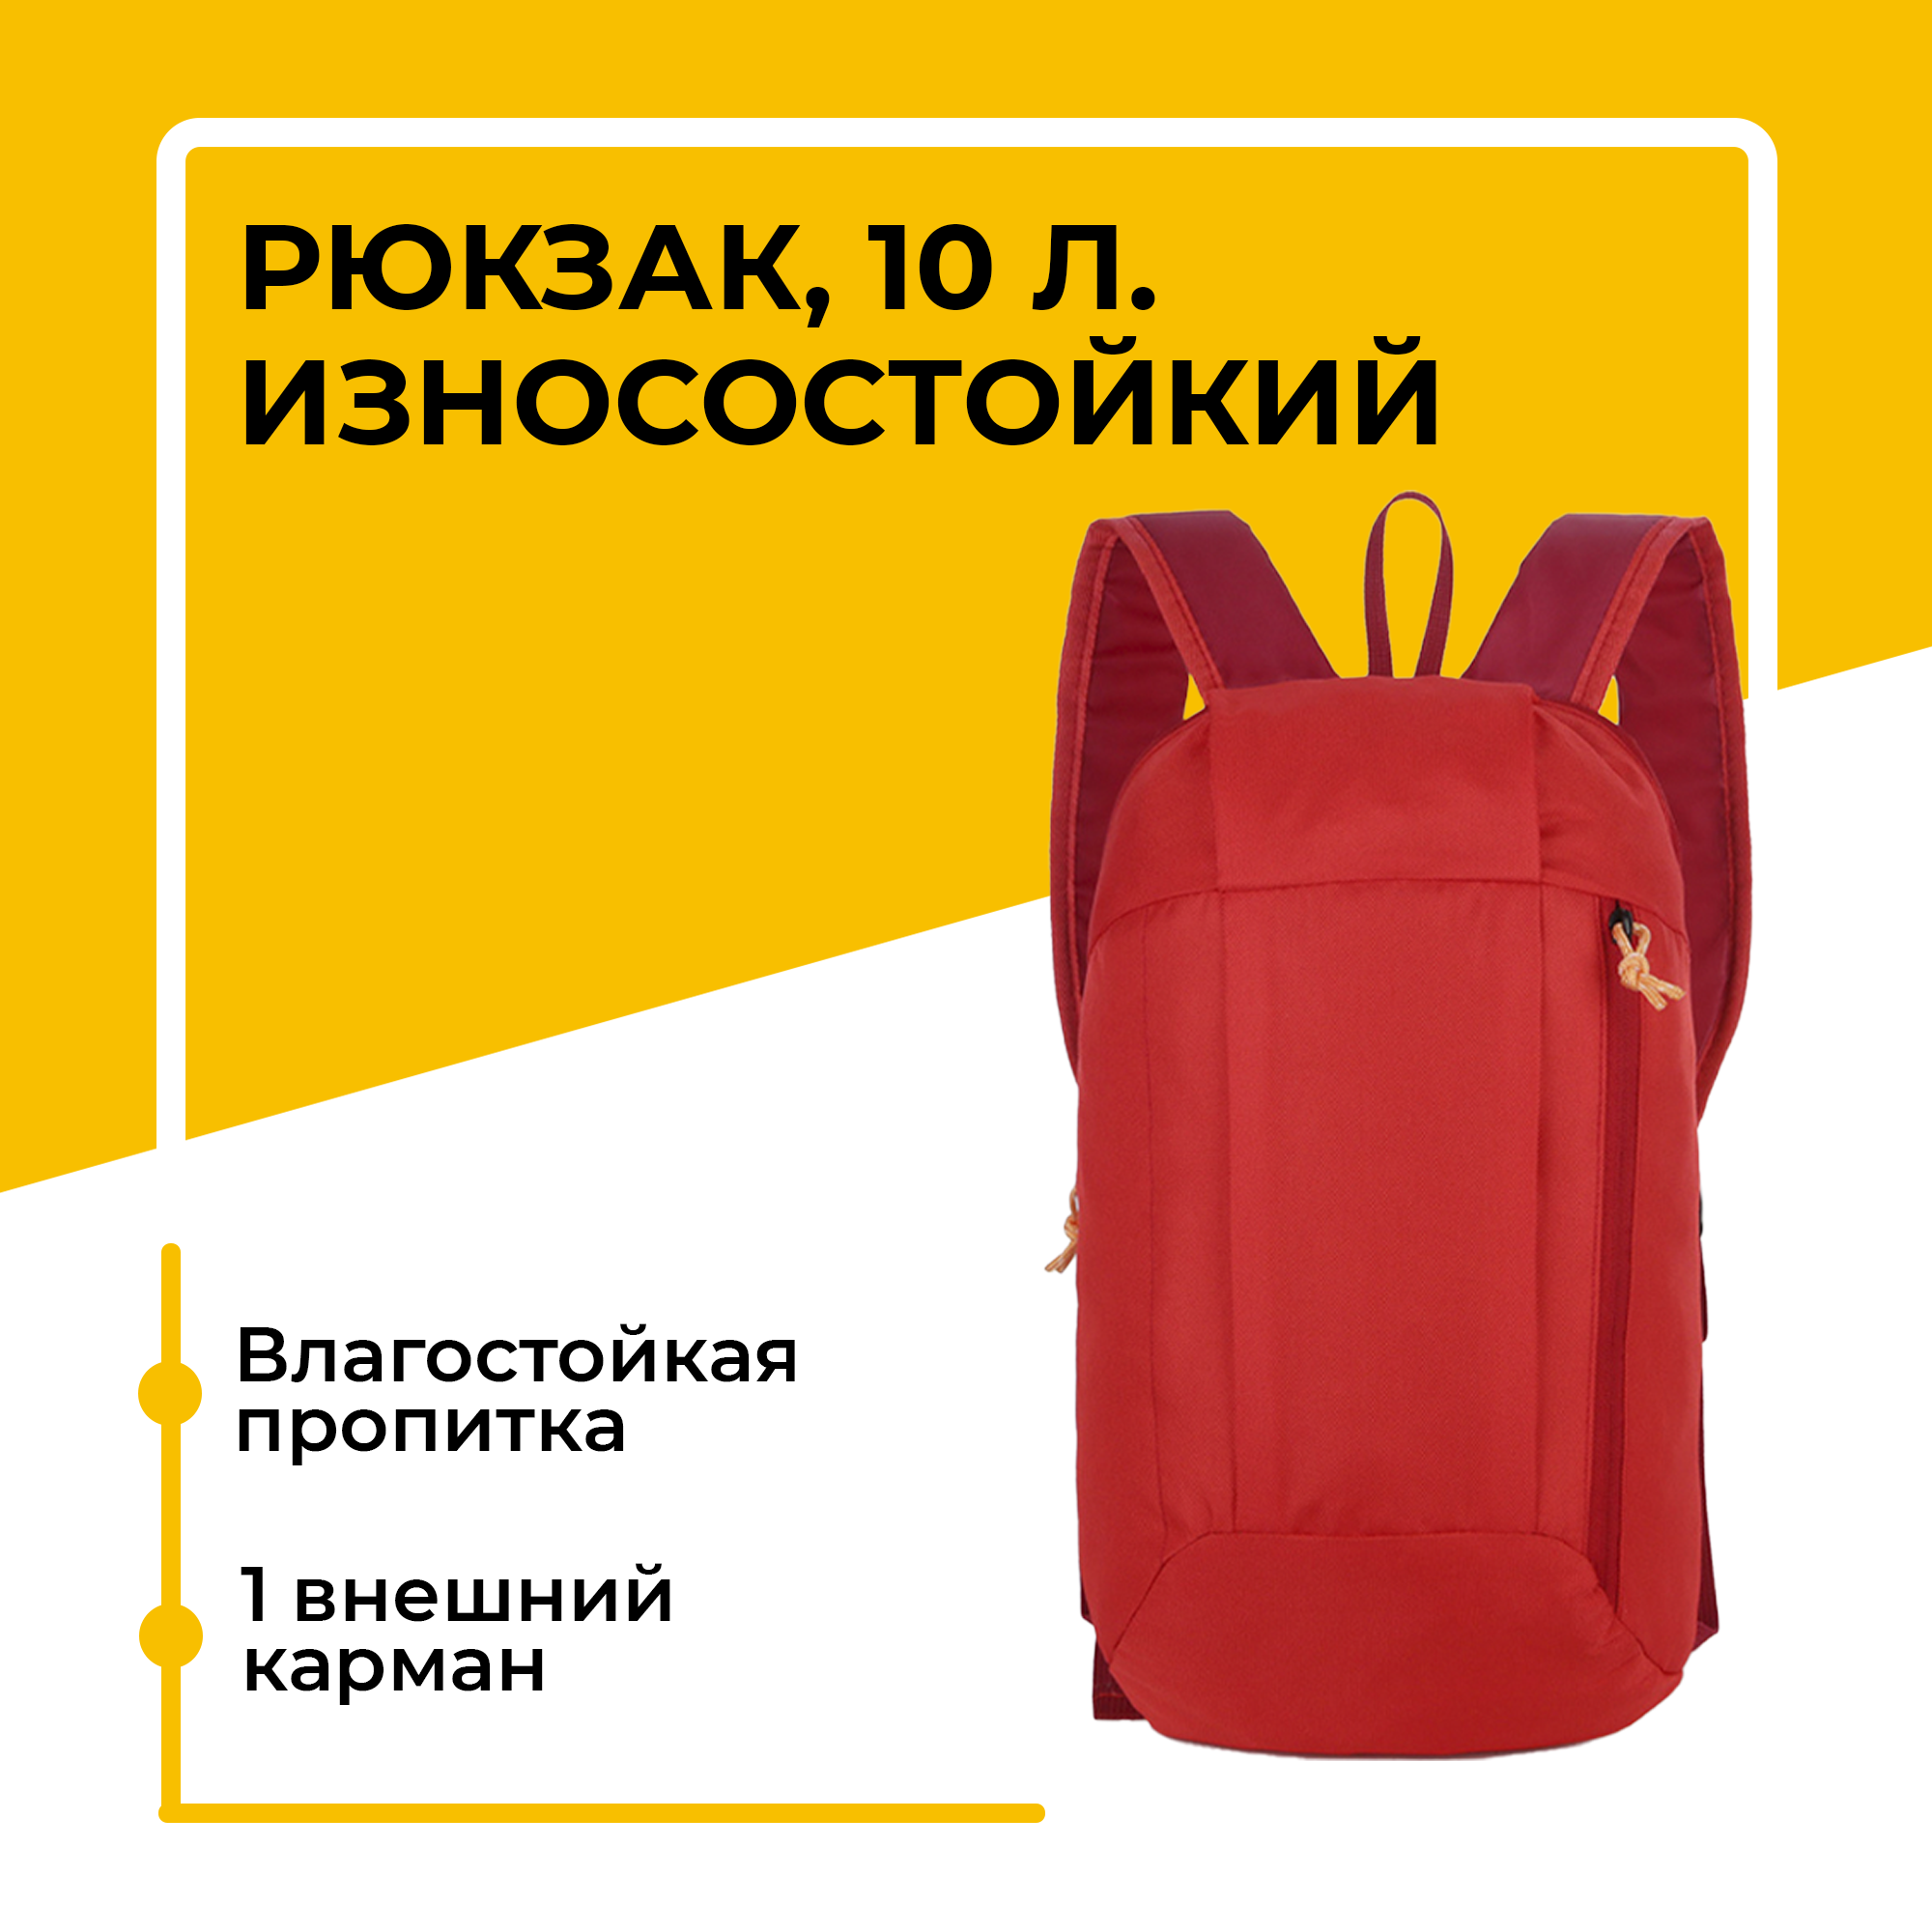 Износостойкий, водонепроницаемый спортивный рюкзак, унисекc, нейлоновая ткань, 40х21х13 см, красный